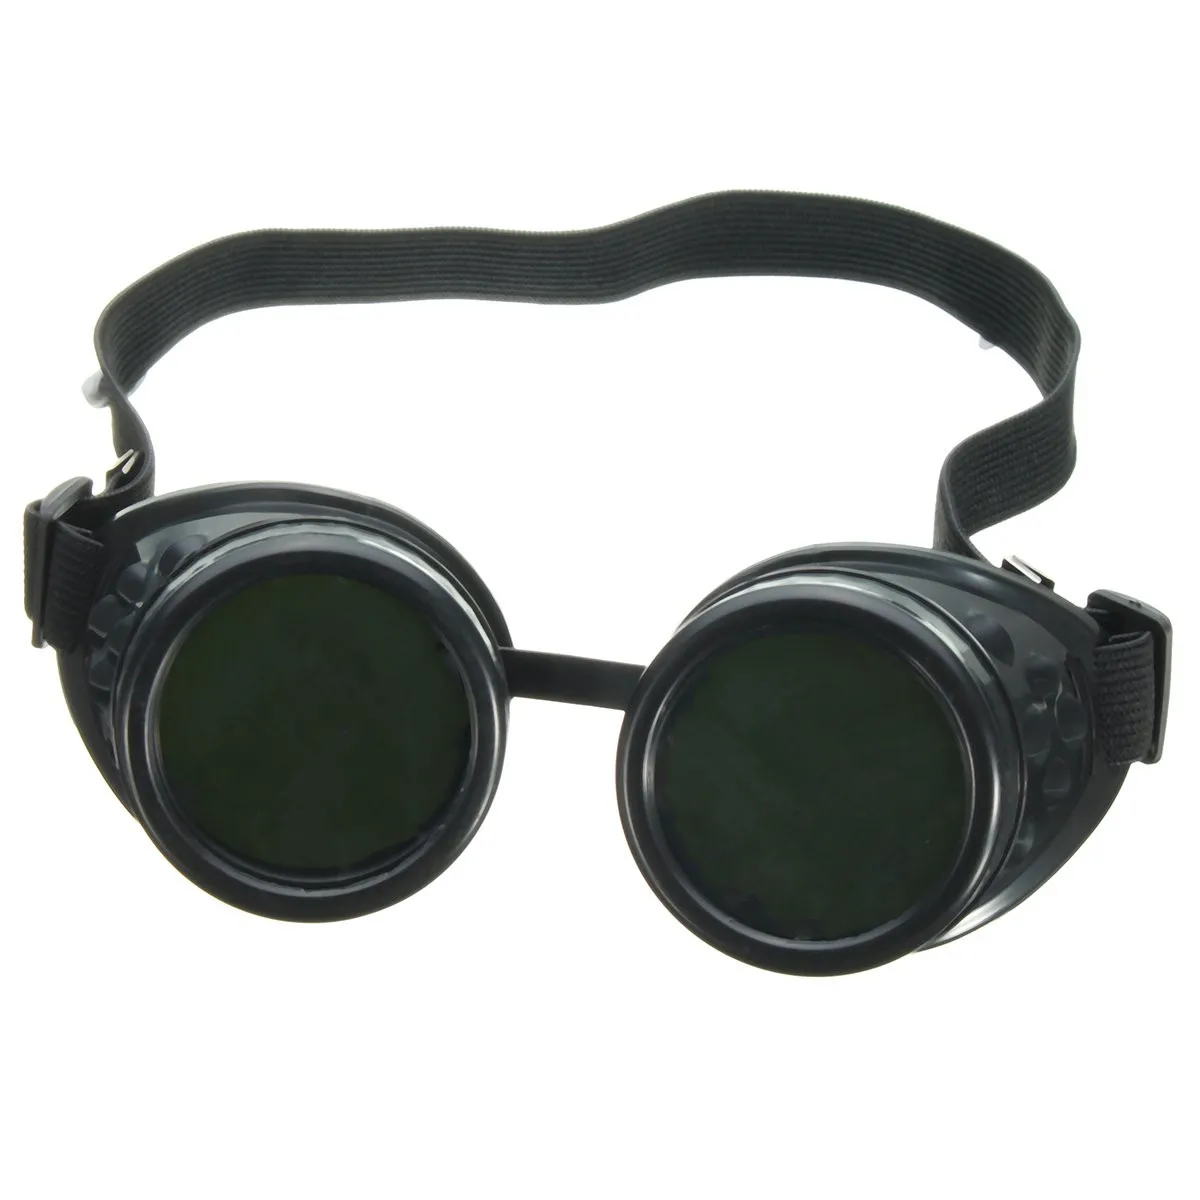 Новый сварка, резка сварщиков промышленные защитные очки стимпанк Cup очки Горячие безопасность на рабочем месте очки